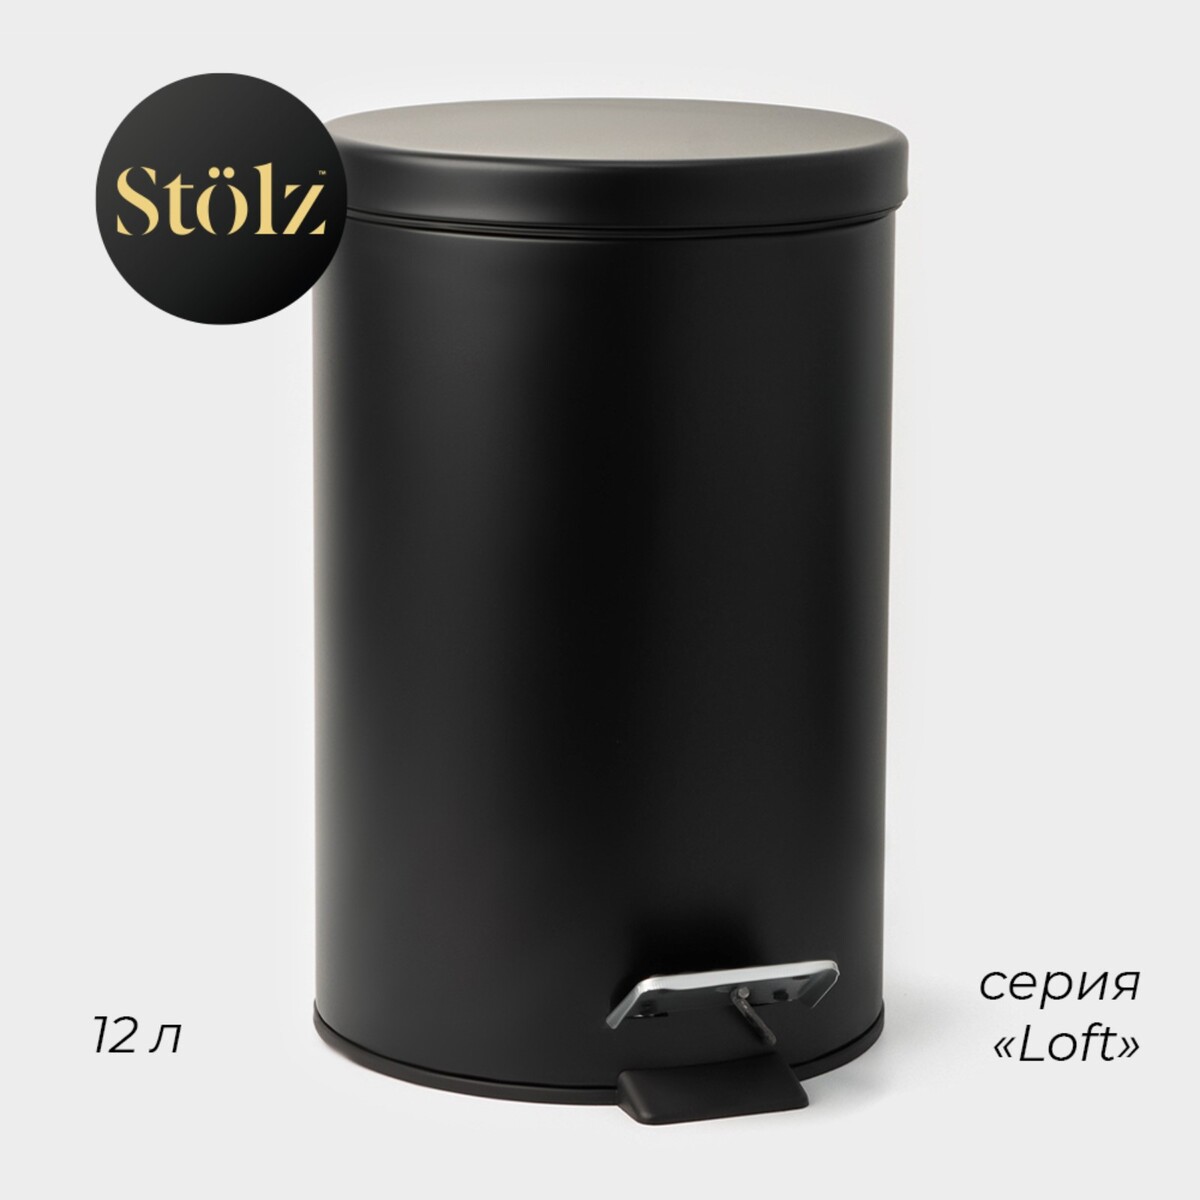 Ведро мусорное с педалью штольц stölz, 12 л, нержавеющая сталь, цвет черный ведро для мусора с педалью 8 л perilla 83003